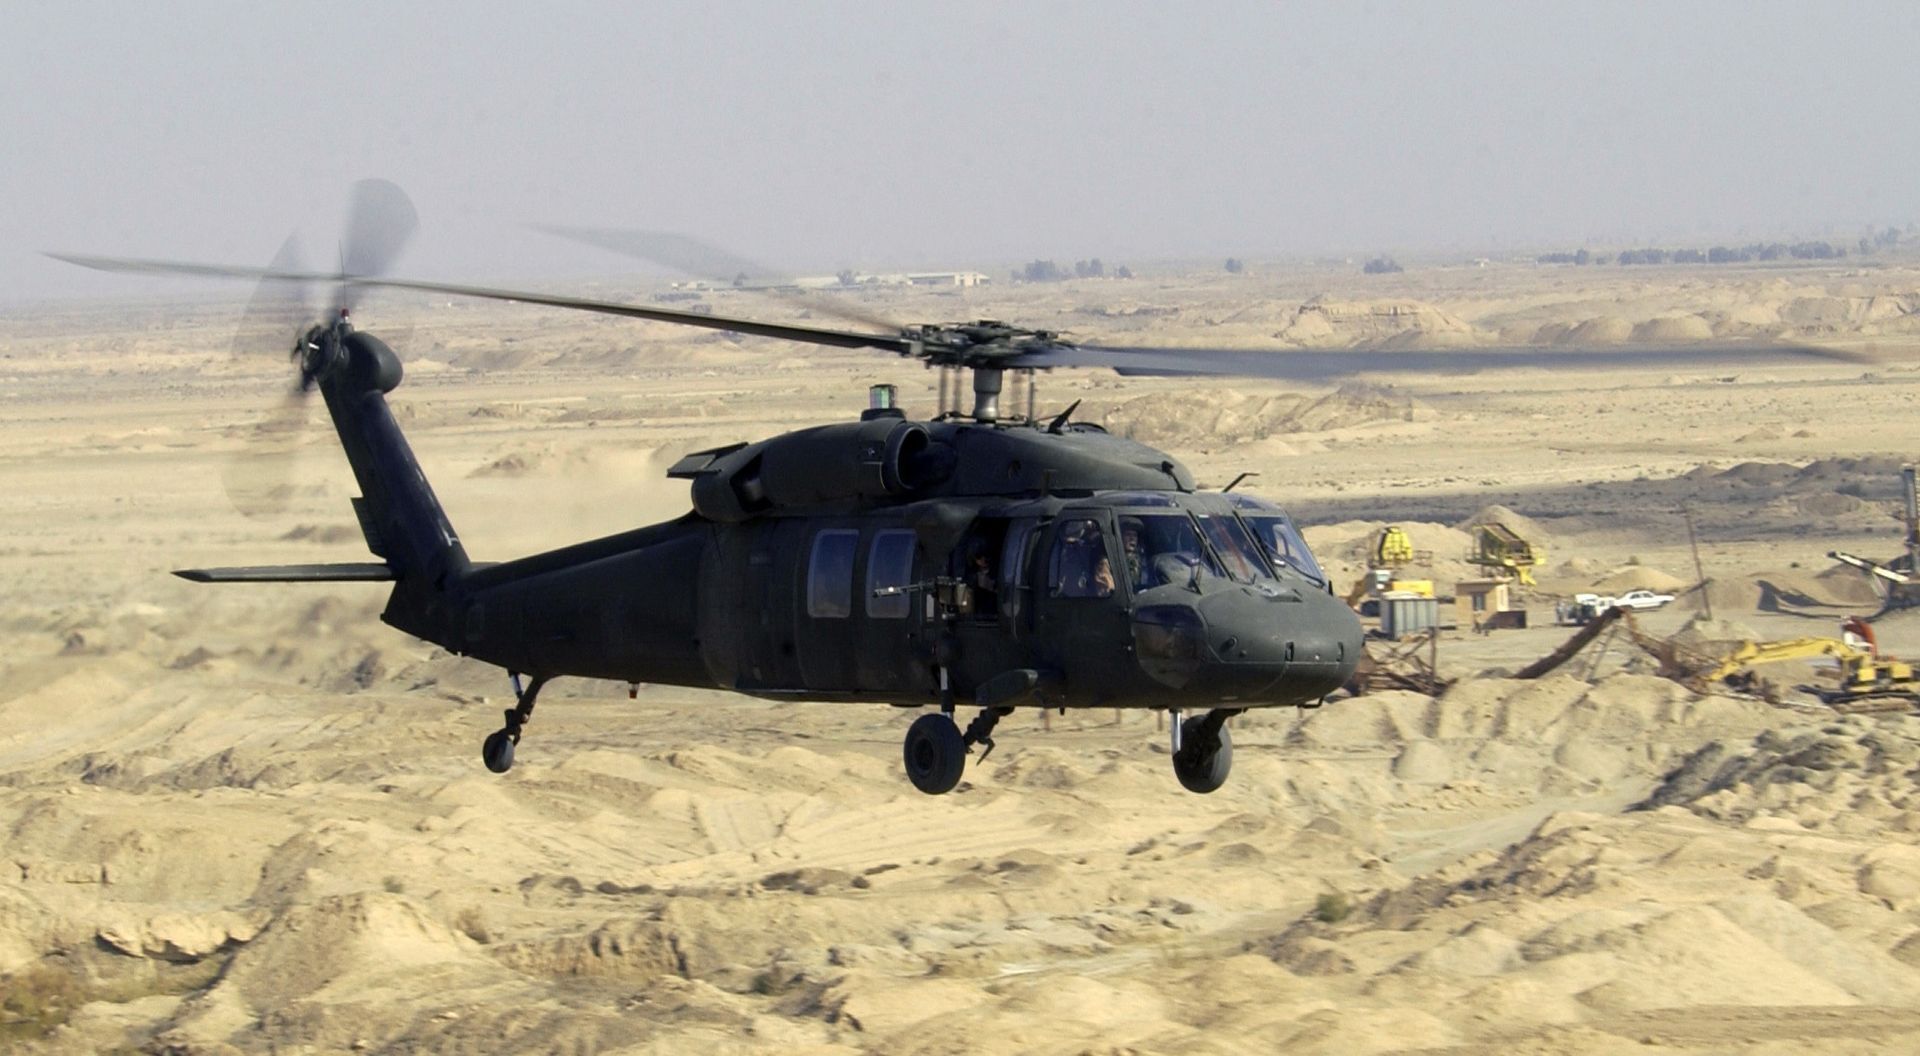 Спецпризначенці ГУР ''засвітили'' американський ''Чорний яструб'': про поставки UH-60 BLACK HAWK раніше не повідомляли. Фото